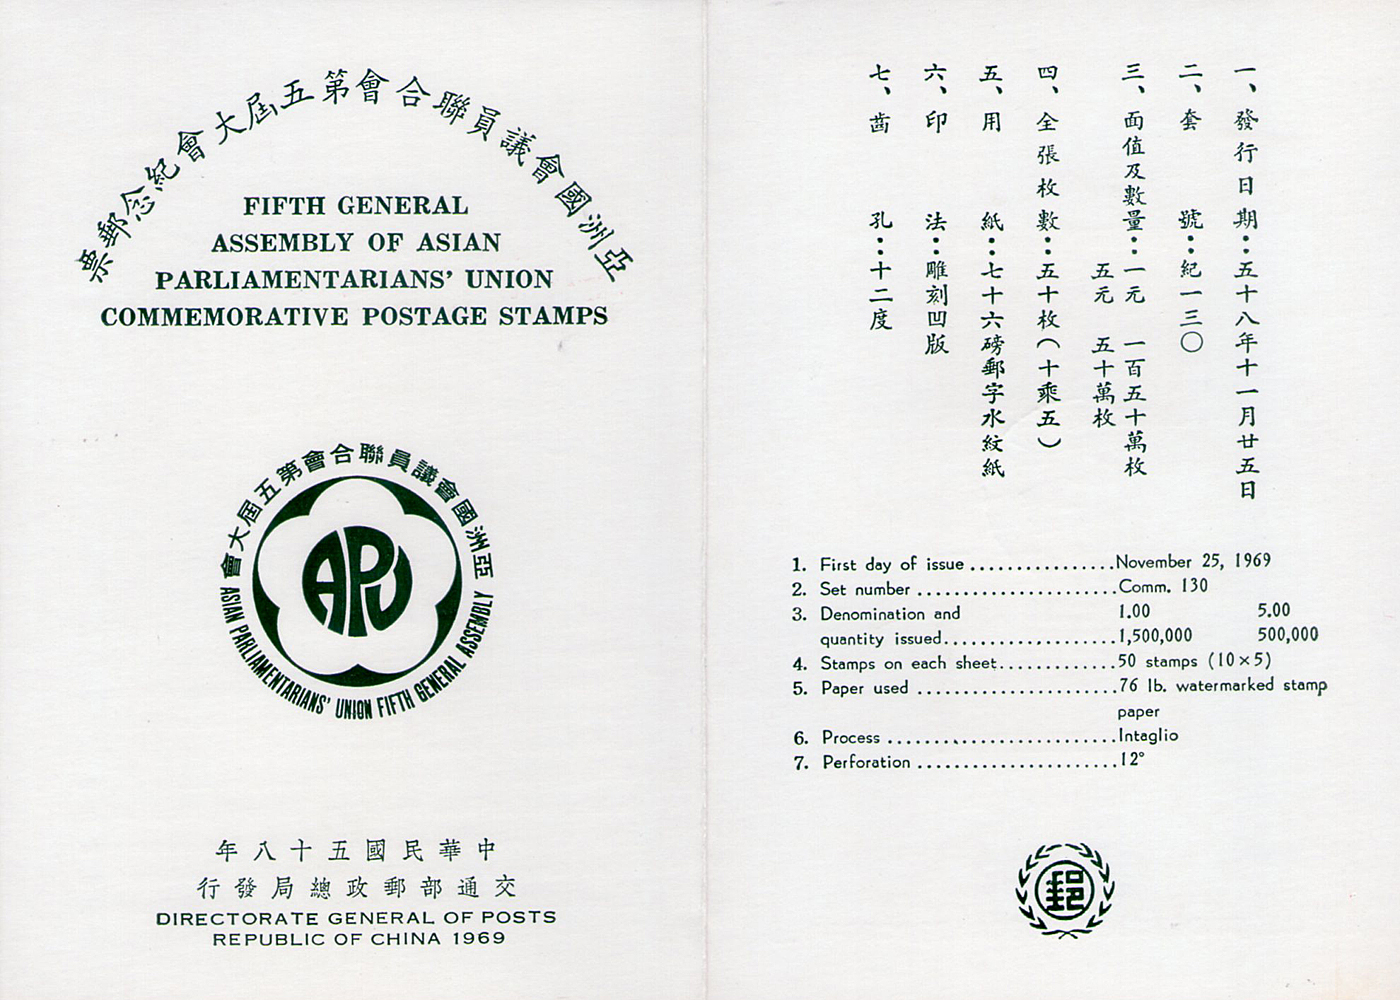 亞洲國會議員聯合會第五屆大會紀念郵票